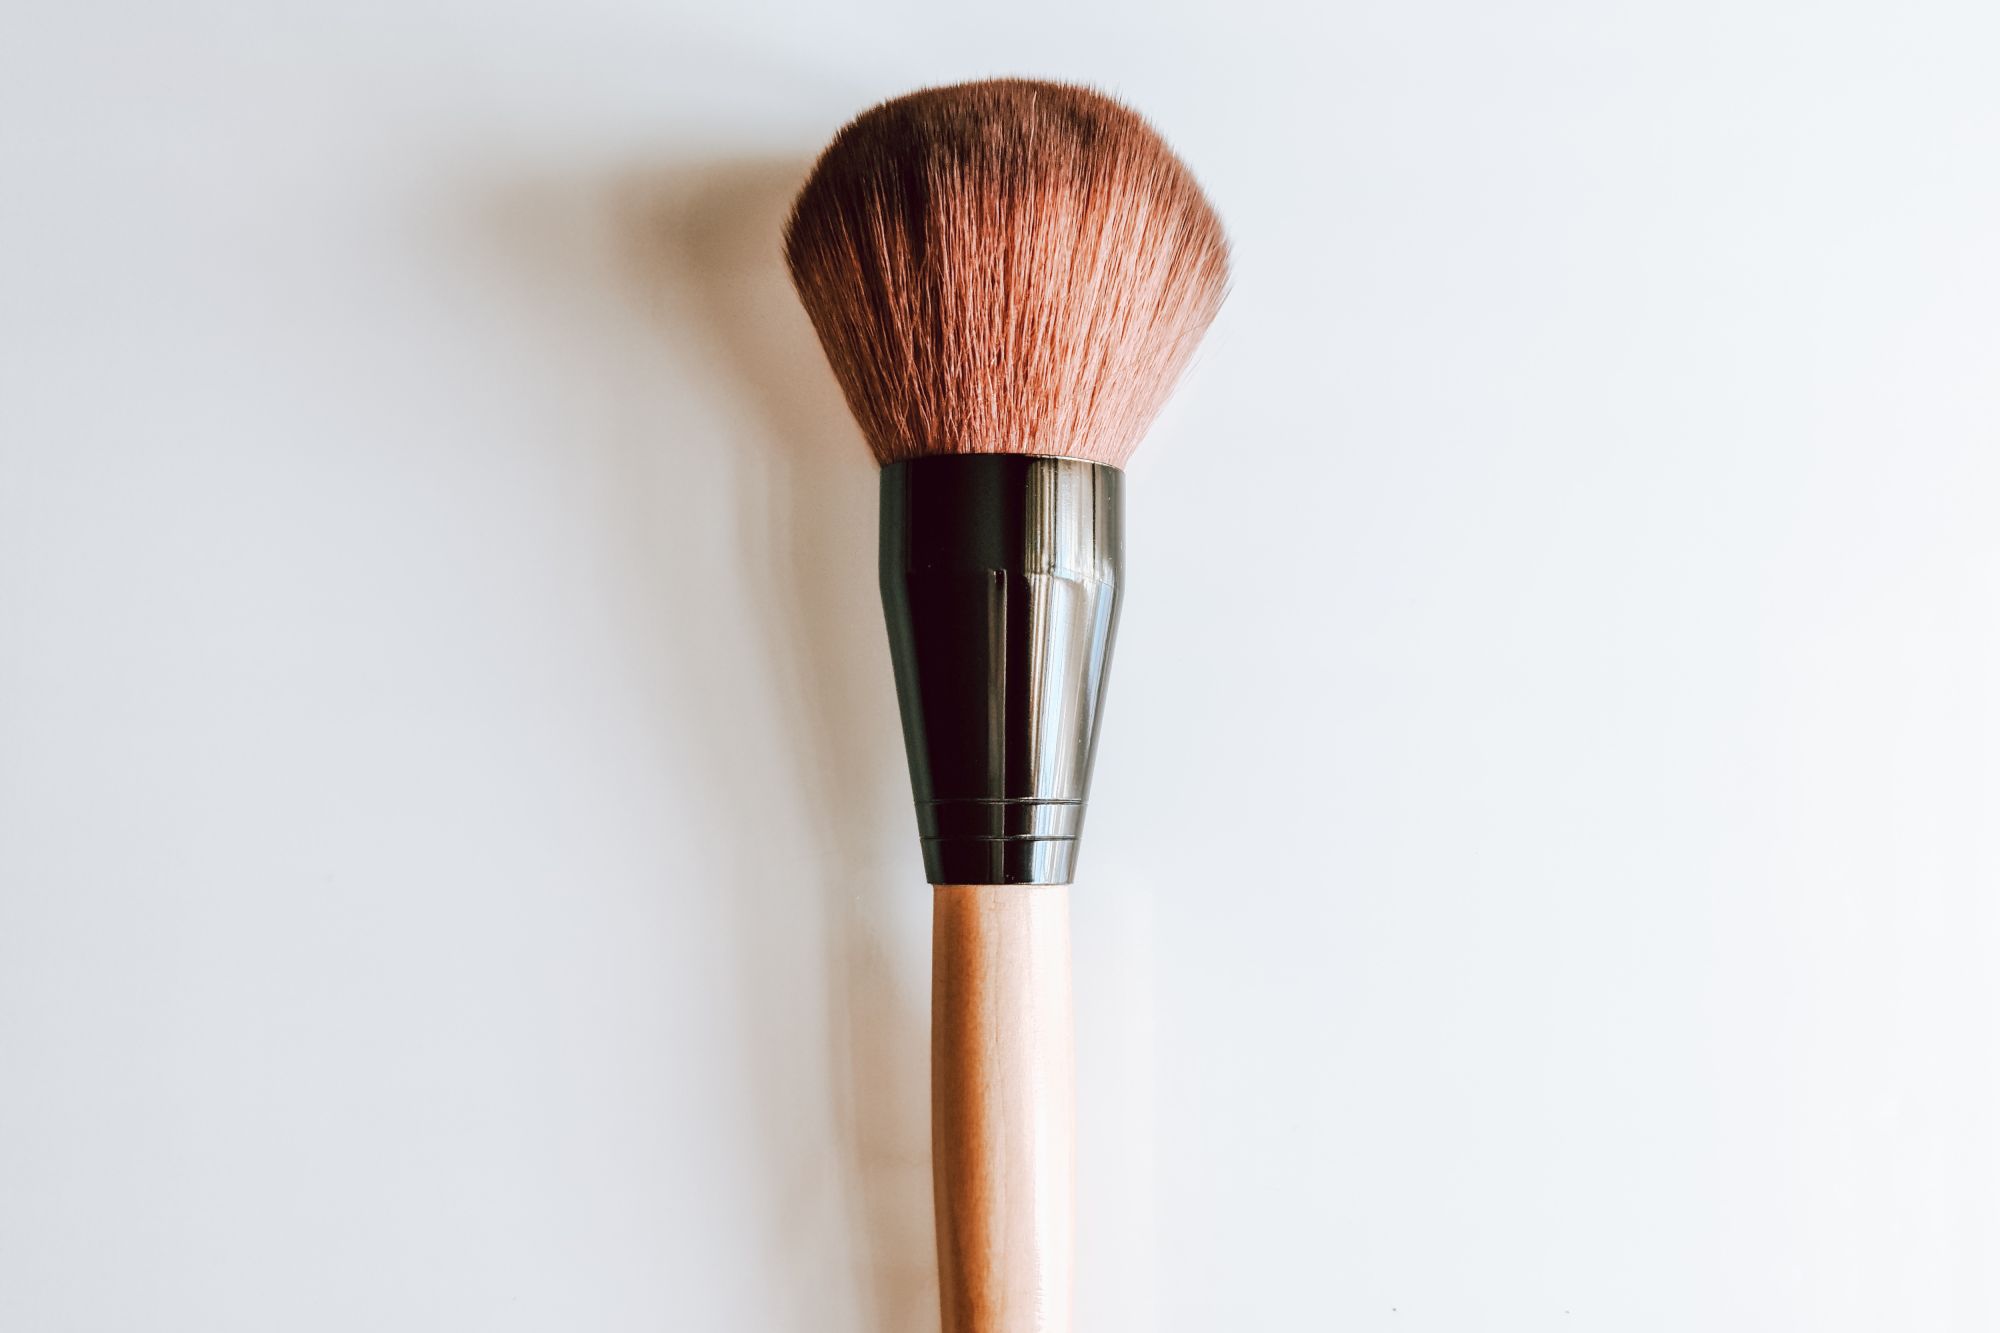 Bamboo makeup brush